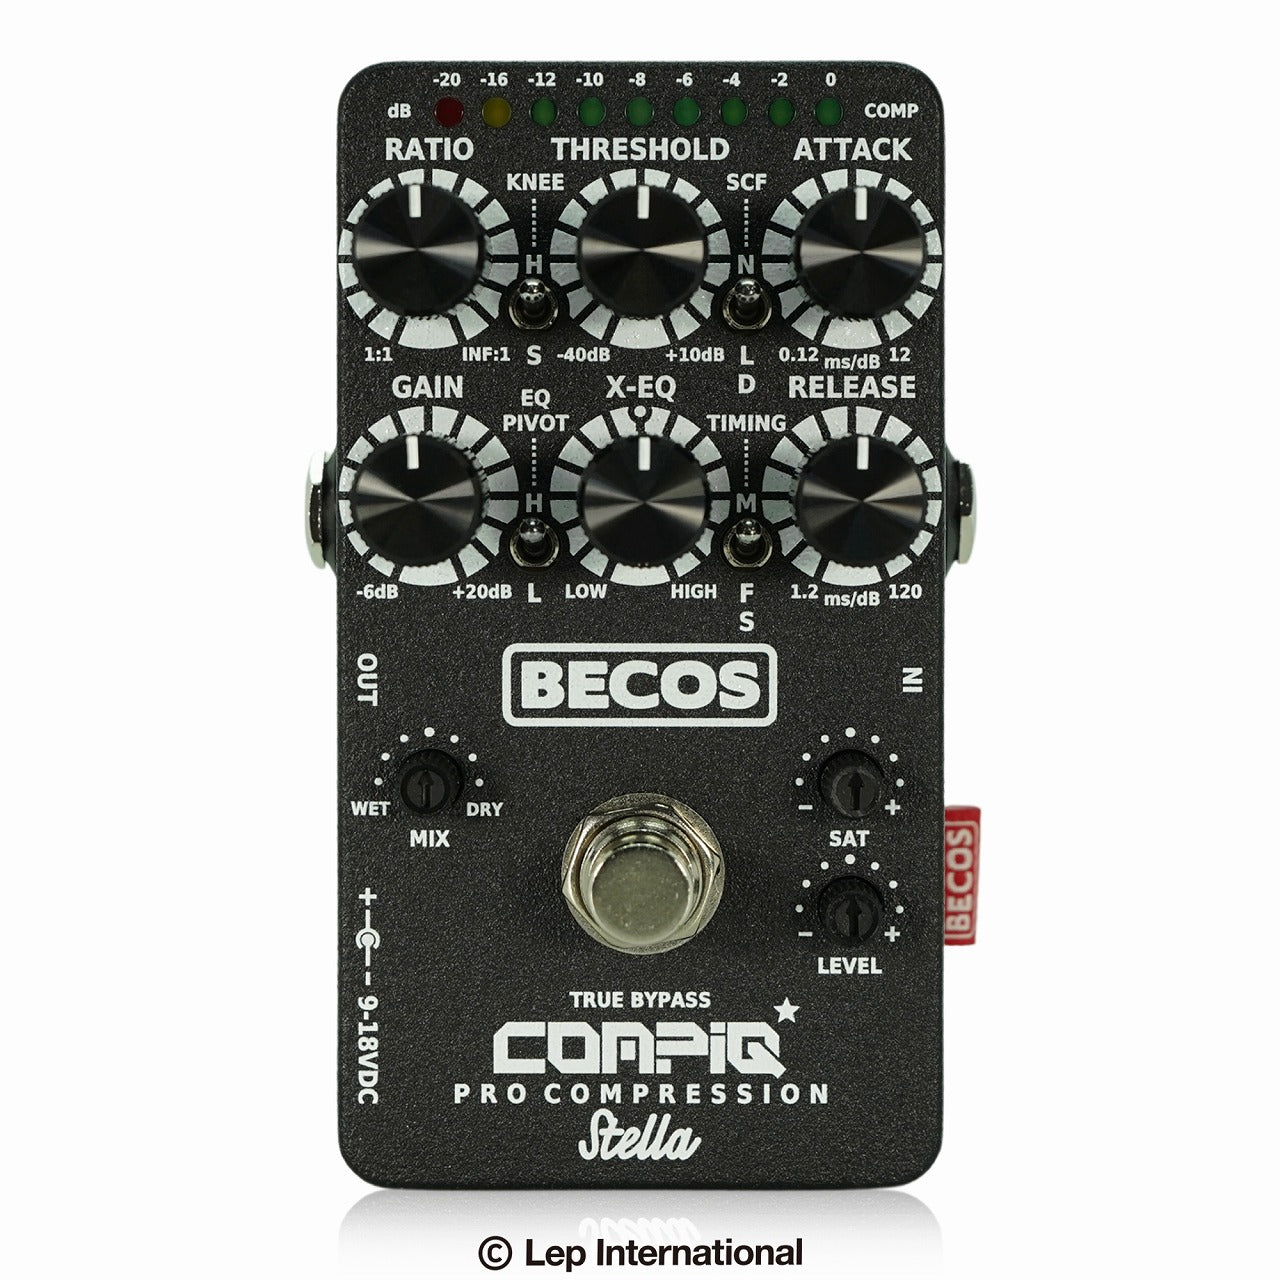 BECOS/CompIQ STELLA Pro Compressor